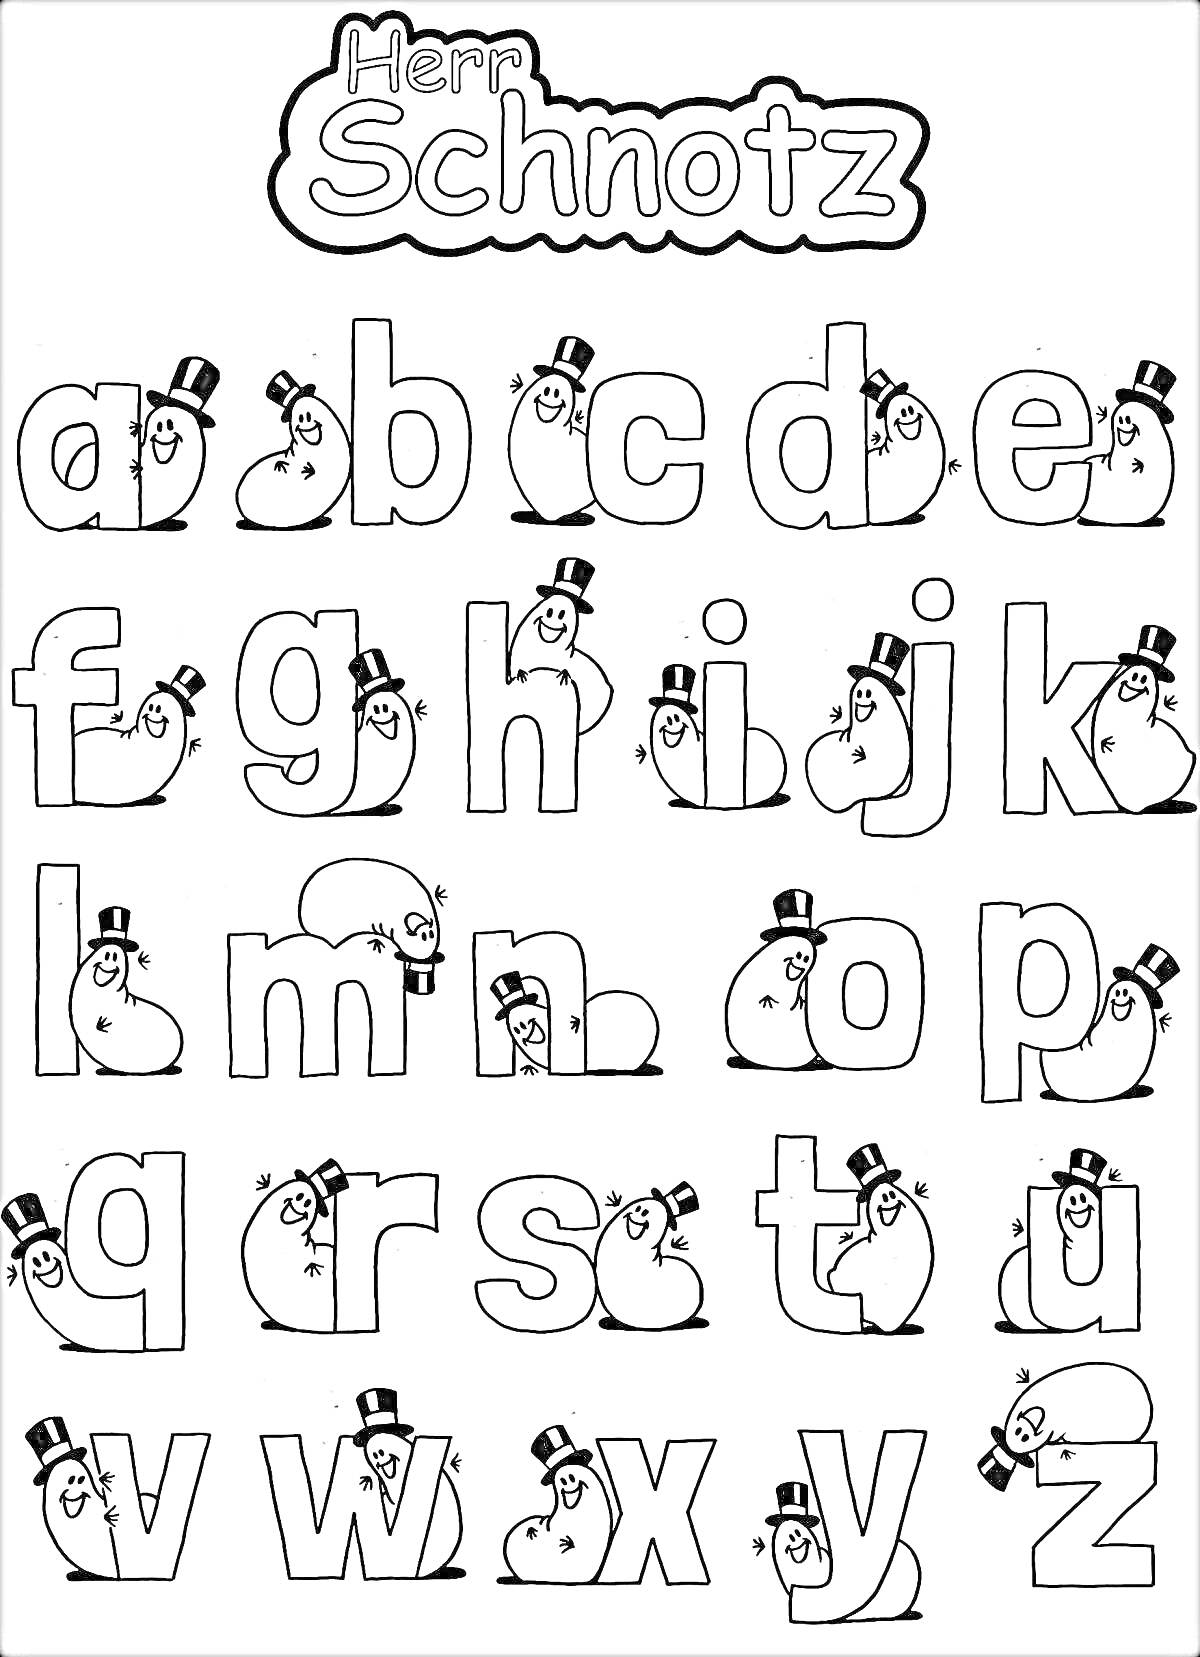 Раскраска Раскраска с английским алфавитом с изображением улыбающихся лиц, одетых в цилиндры, внутри или рядом с буквами. На верхней части написано 